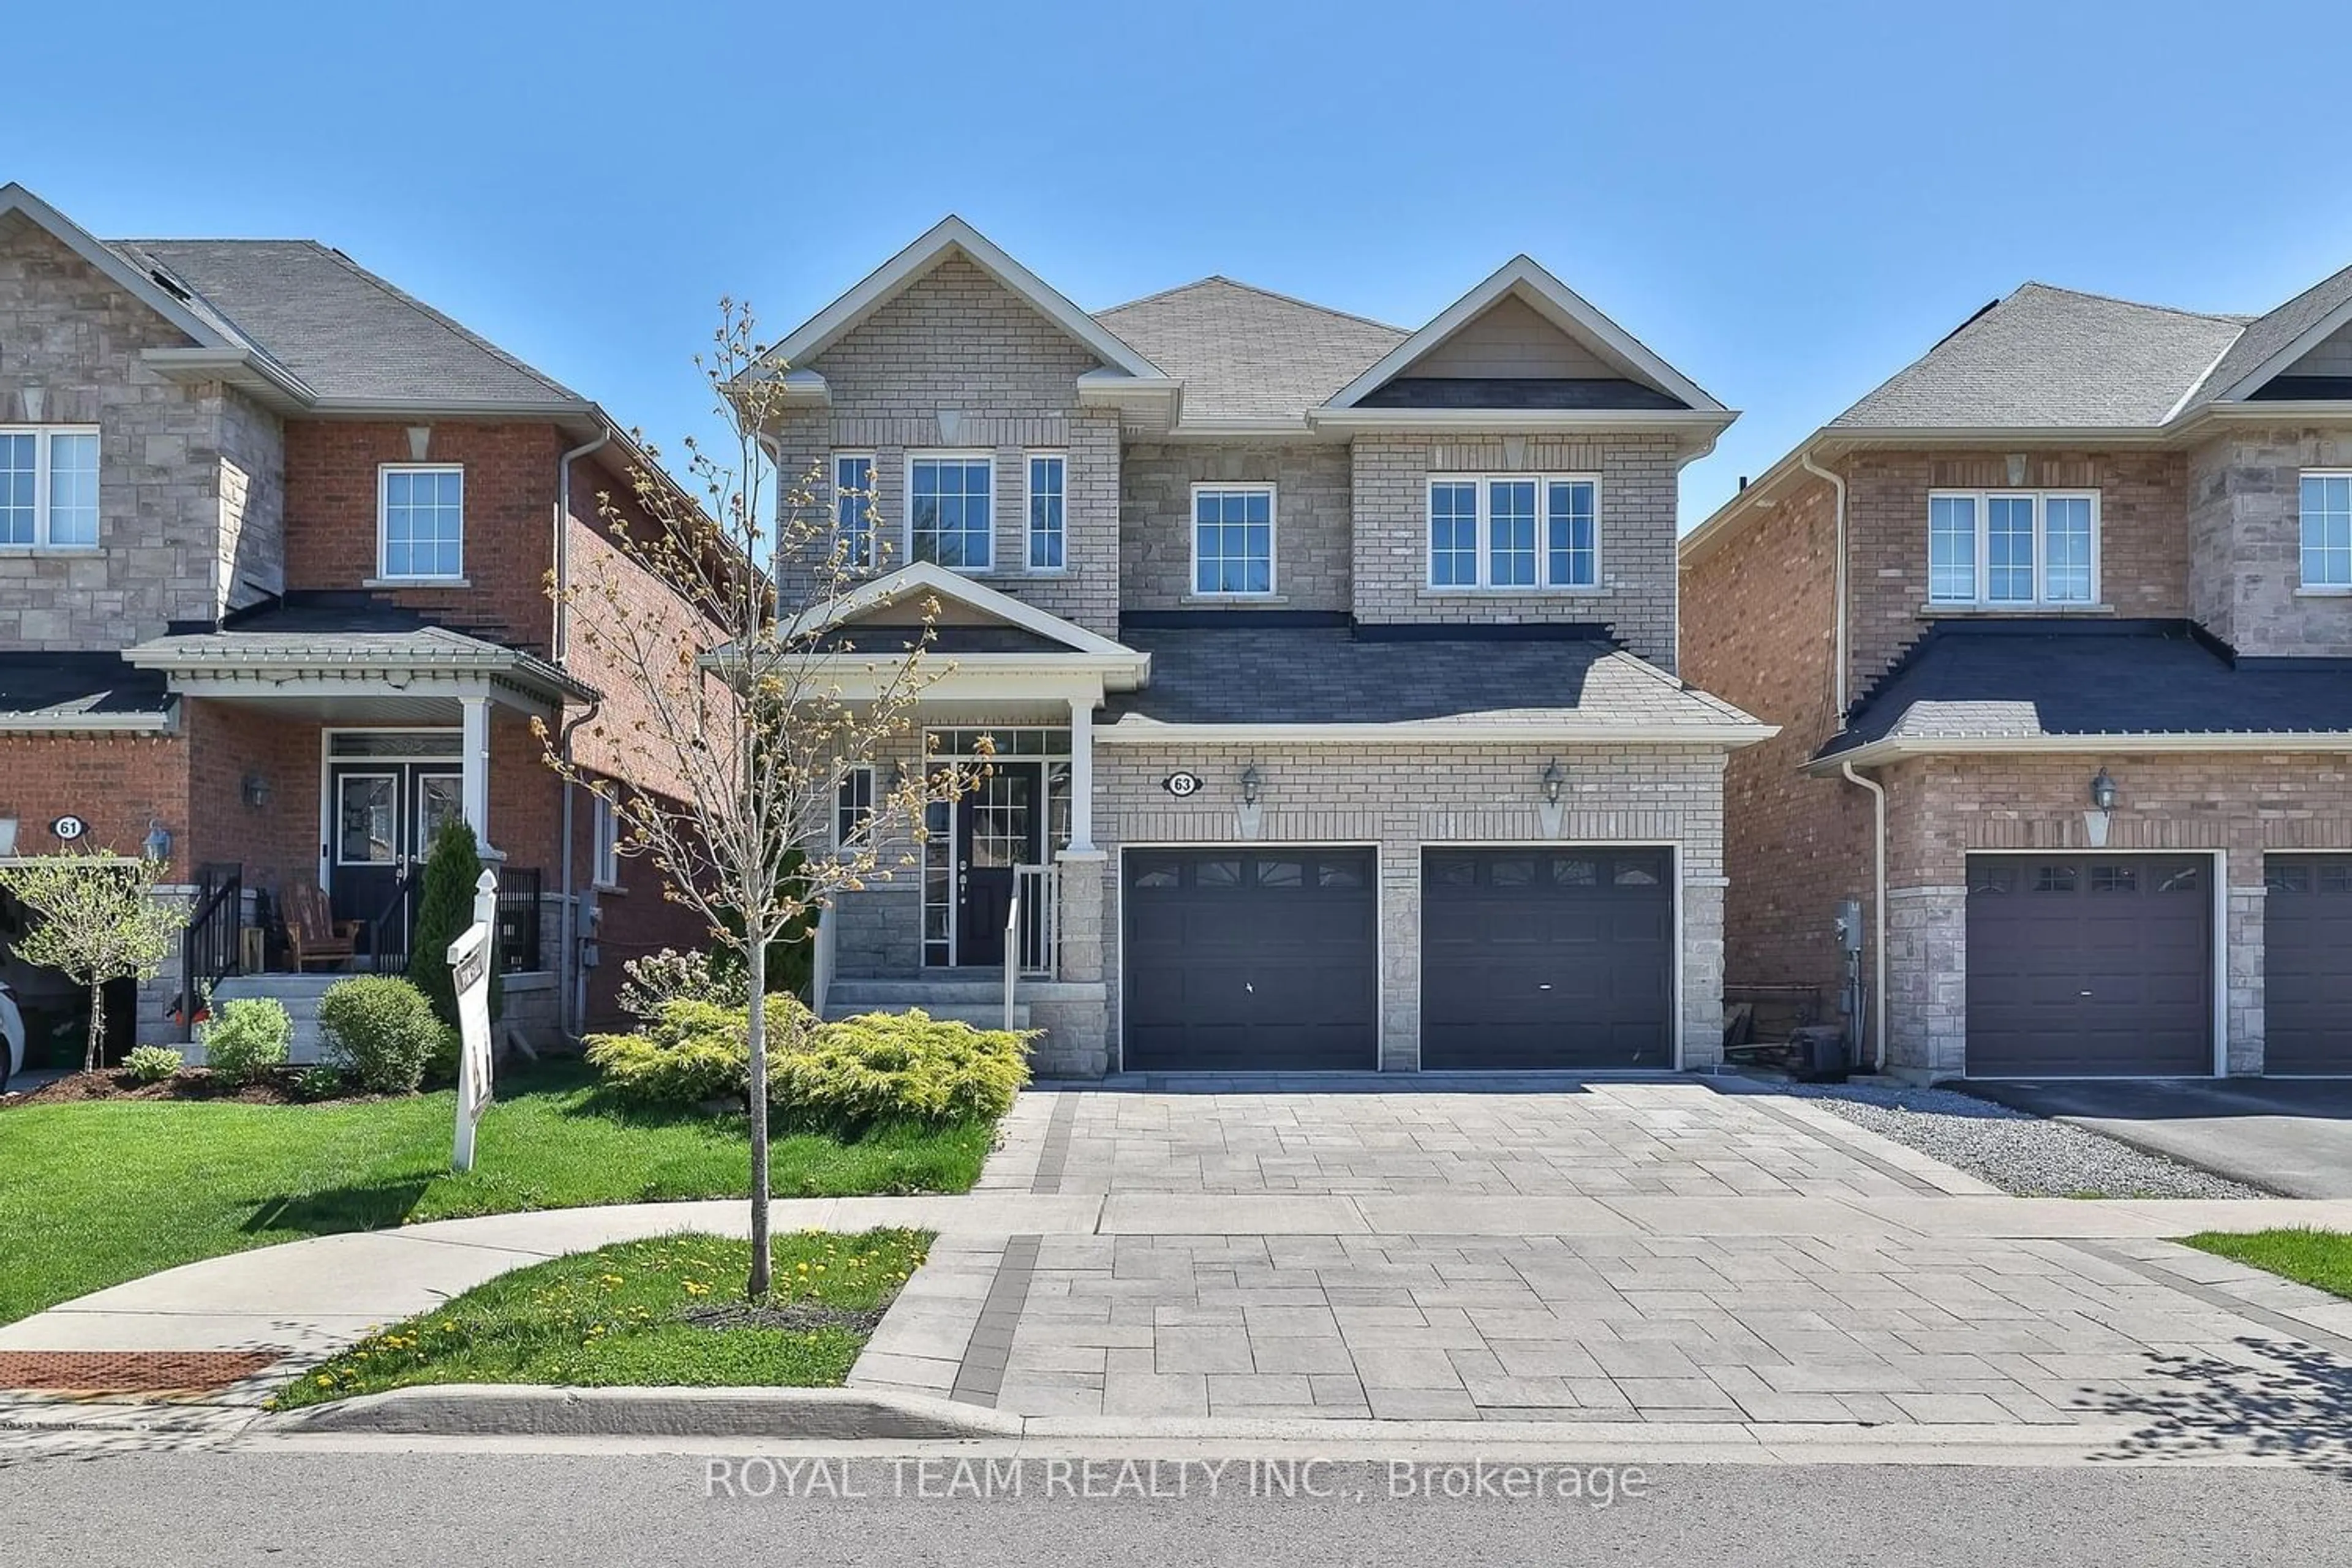 Home with brick exterior material for 63 Prosser Cres, Georgina Ontario L0E 1R0